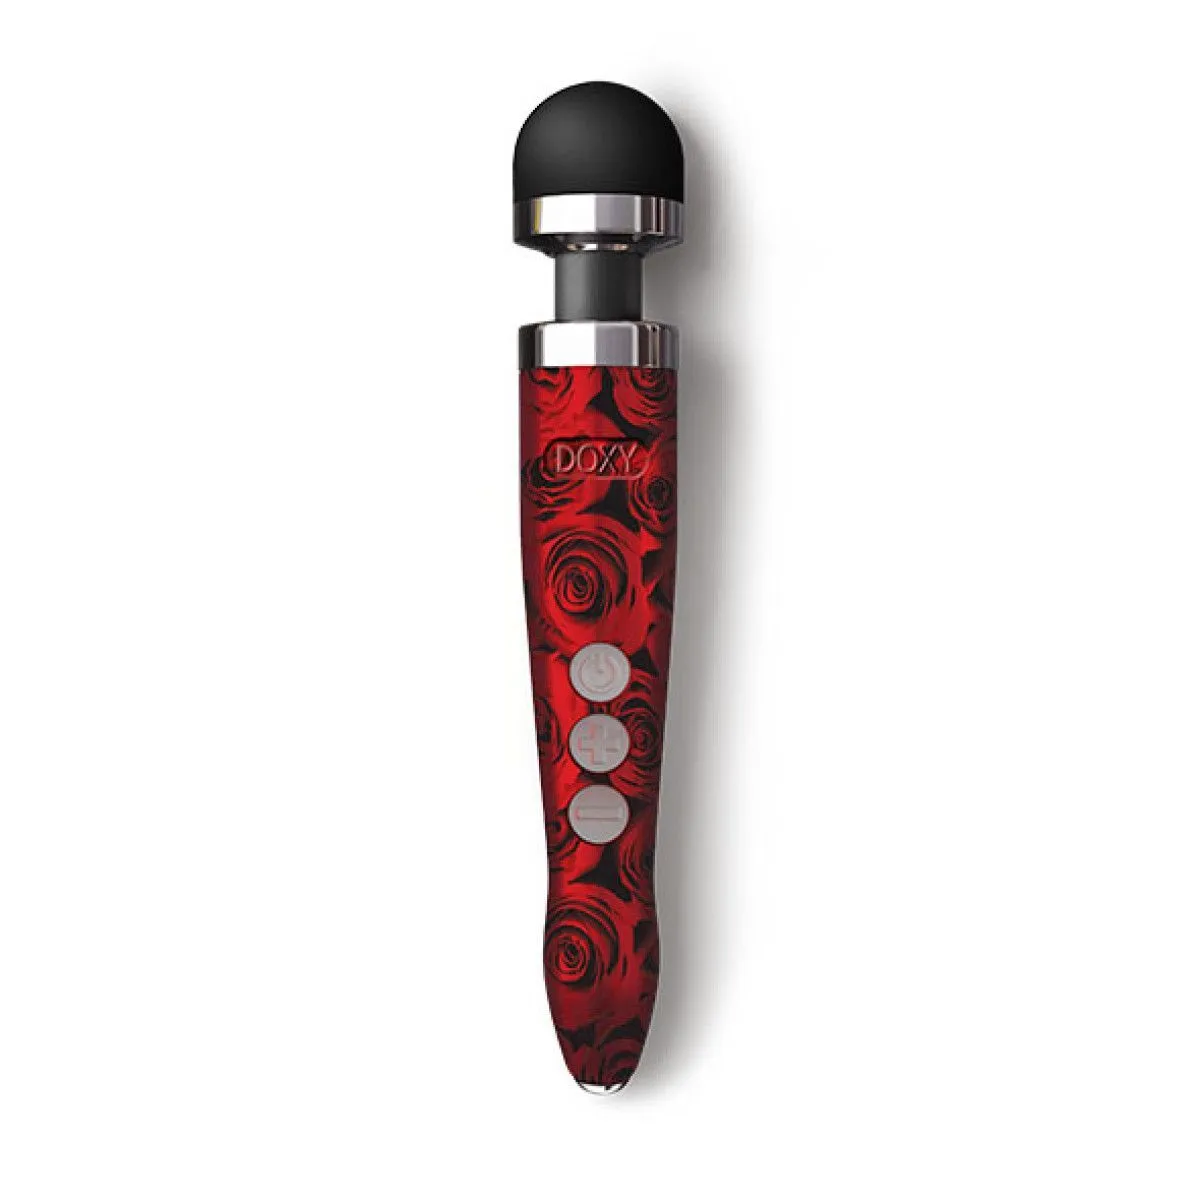 Doxy Die Cast 3R Rose Pattern - очень мощный безпроводной вибратор-микрофон в алюминиево-титановом корпусе, 28х4.5 см (красный)